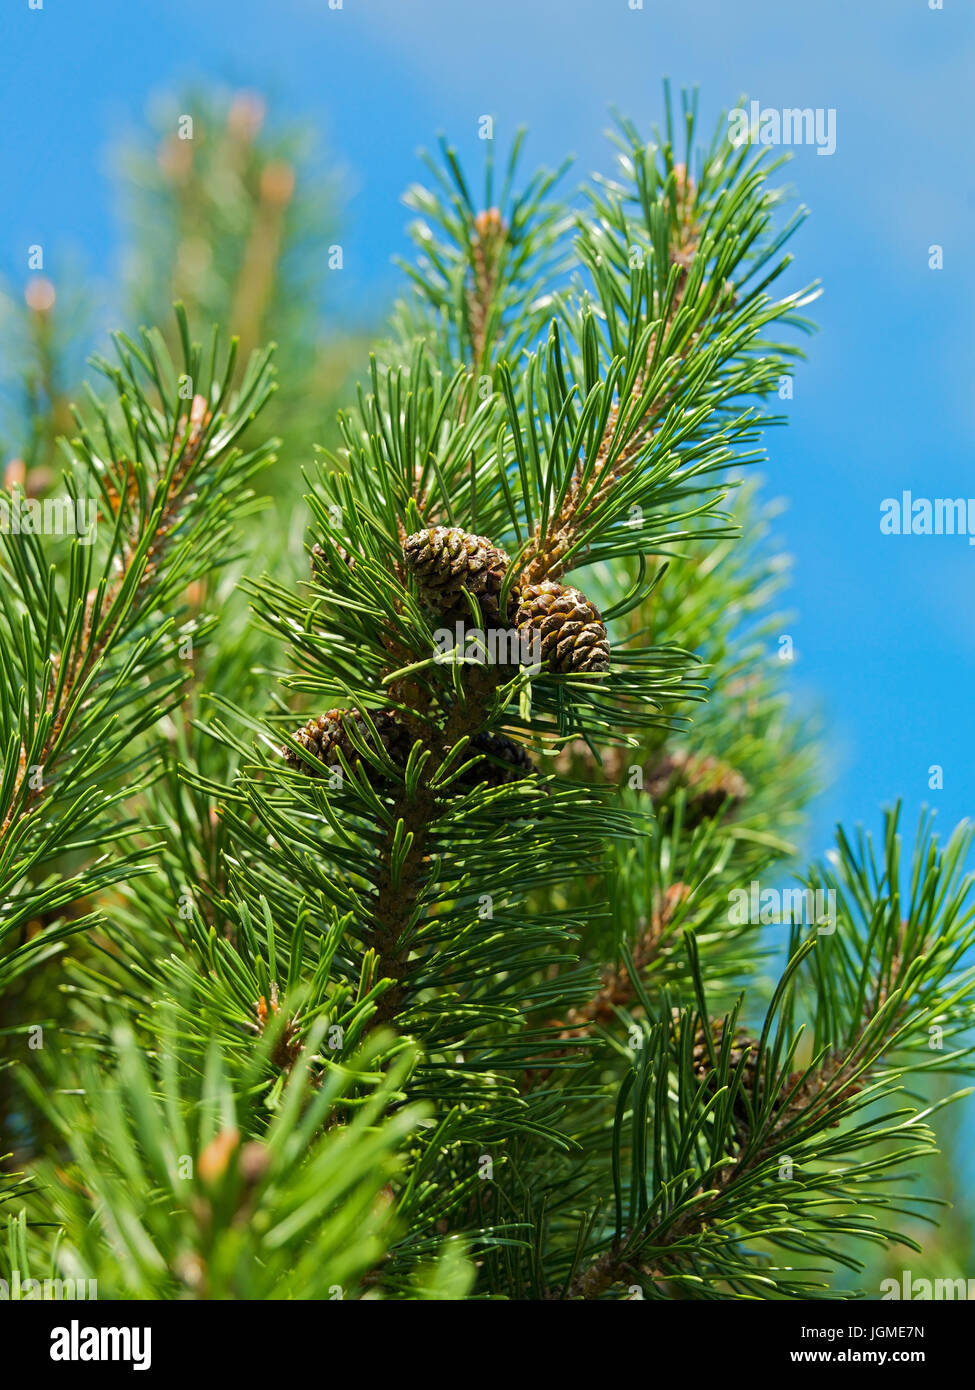 Mountain pine, mountain pine, mountain pine pine - Dwarf pine, mountain pine, Latsche, Bergkiefer, Latschenkiefer - Dwarf pine Stock Photo